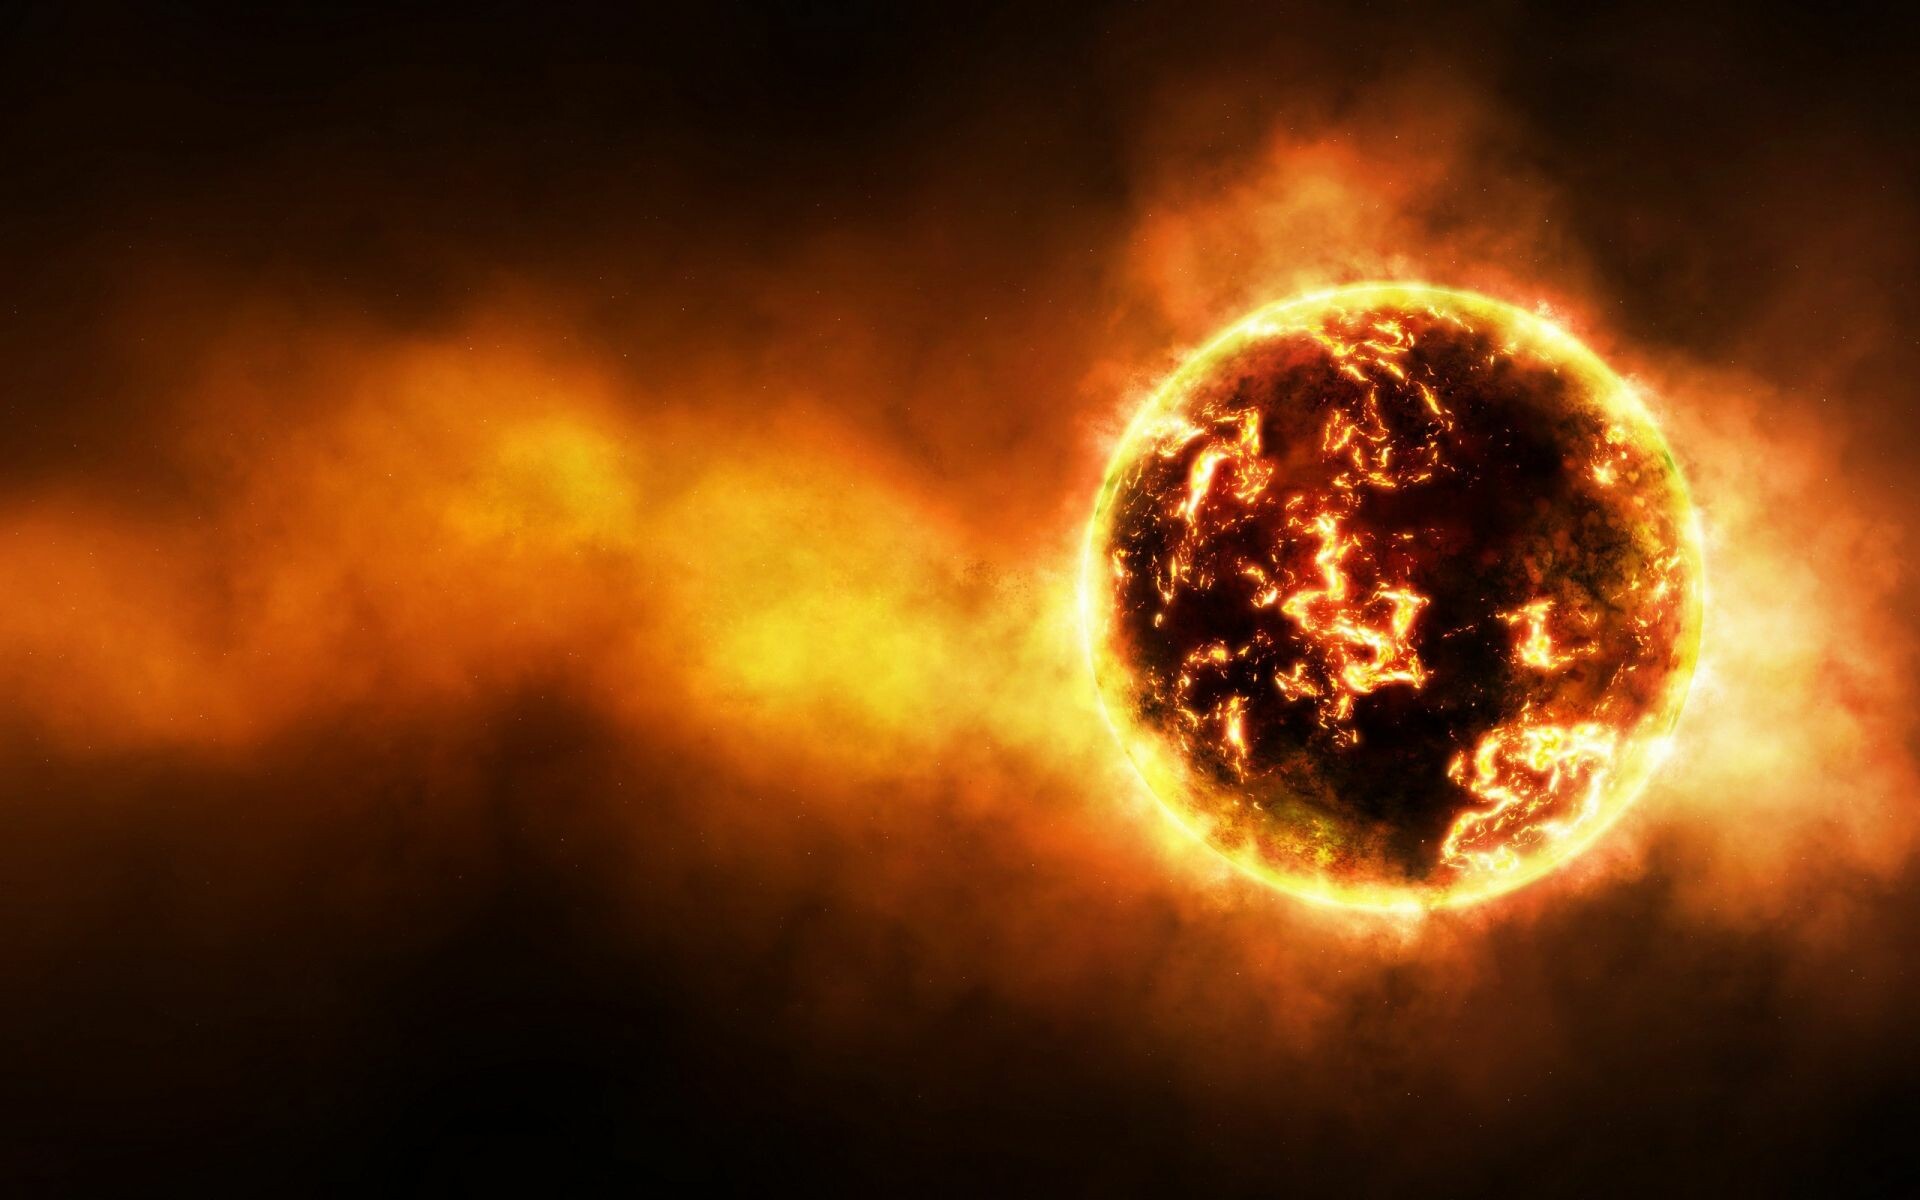 Burning sun, Intense heat, Fiery inferno, Scorching skies, 1920x1200 HD Desktop